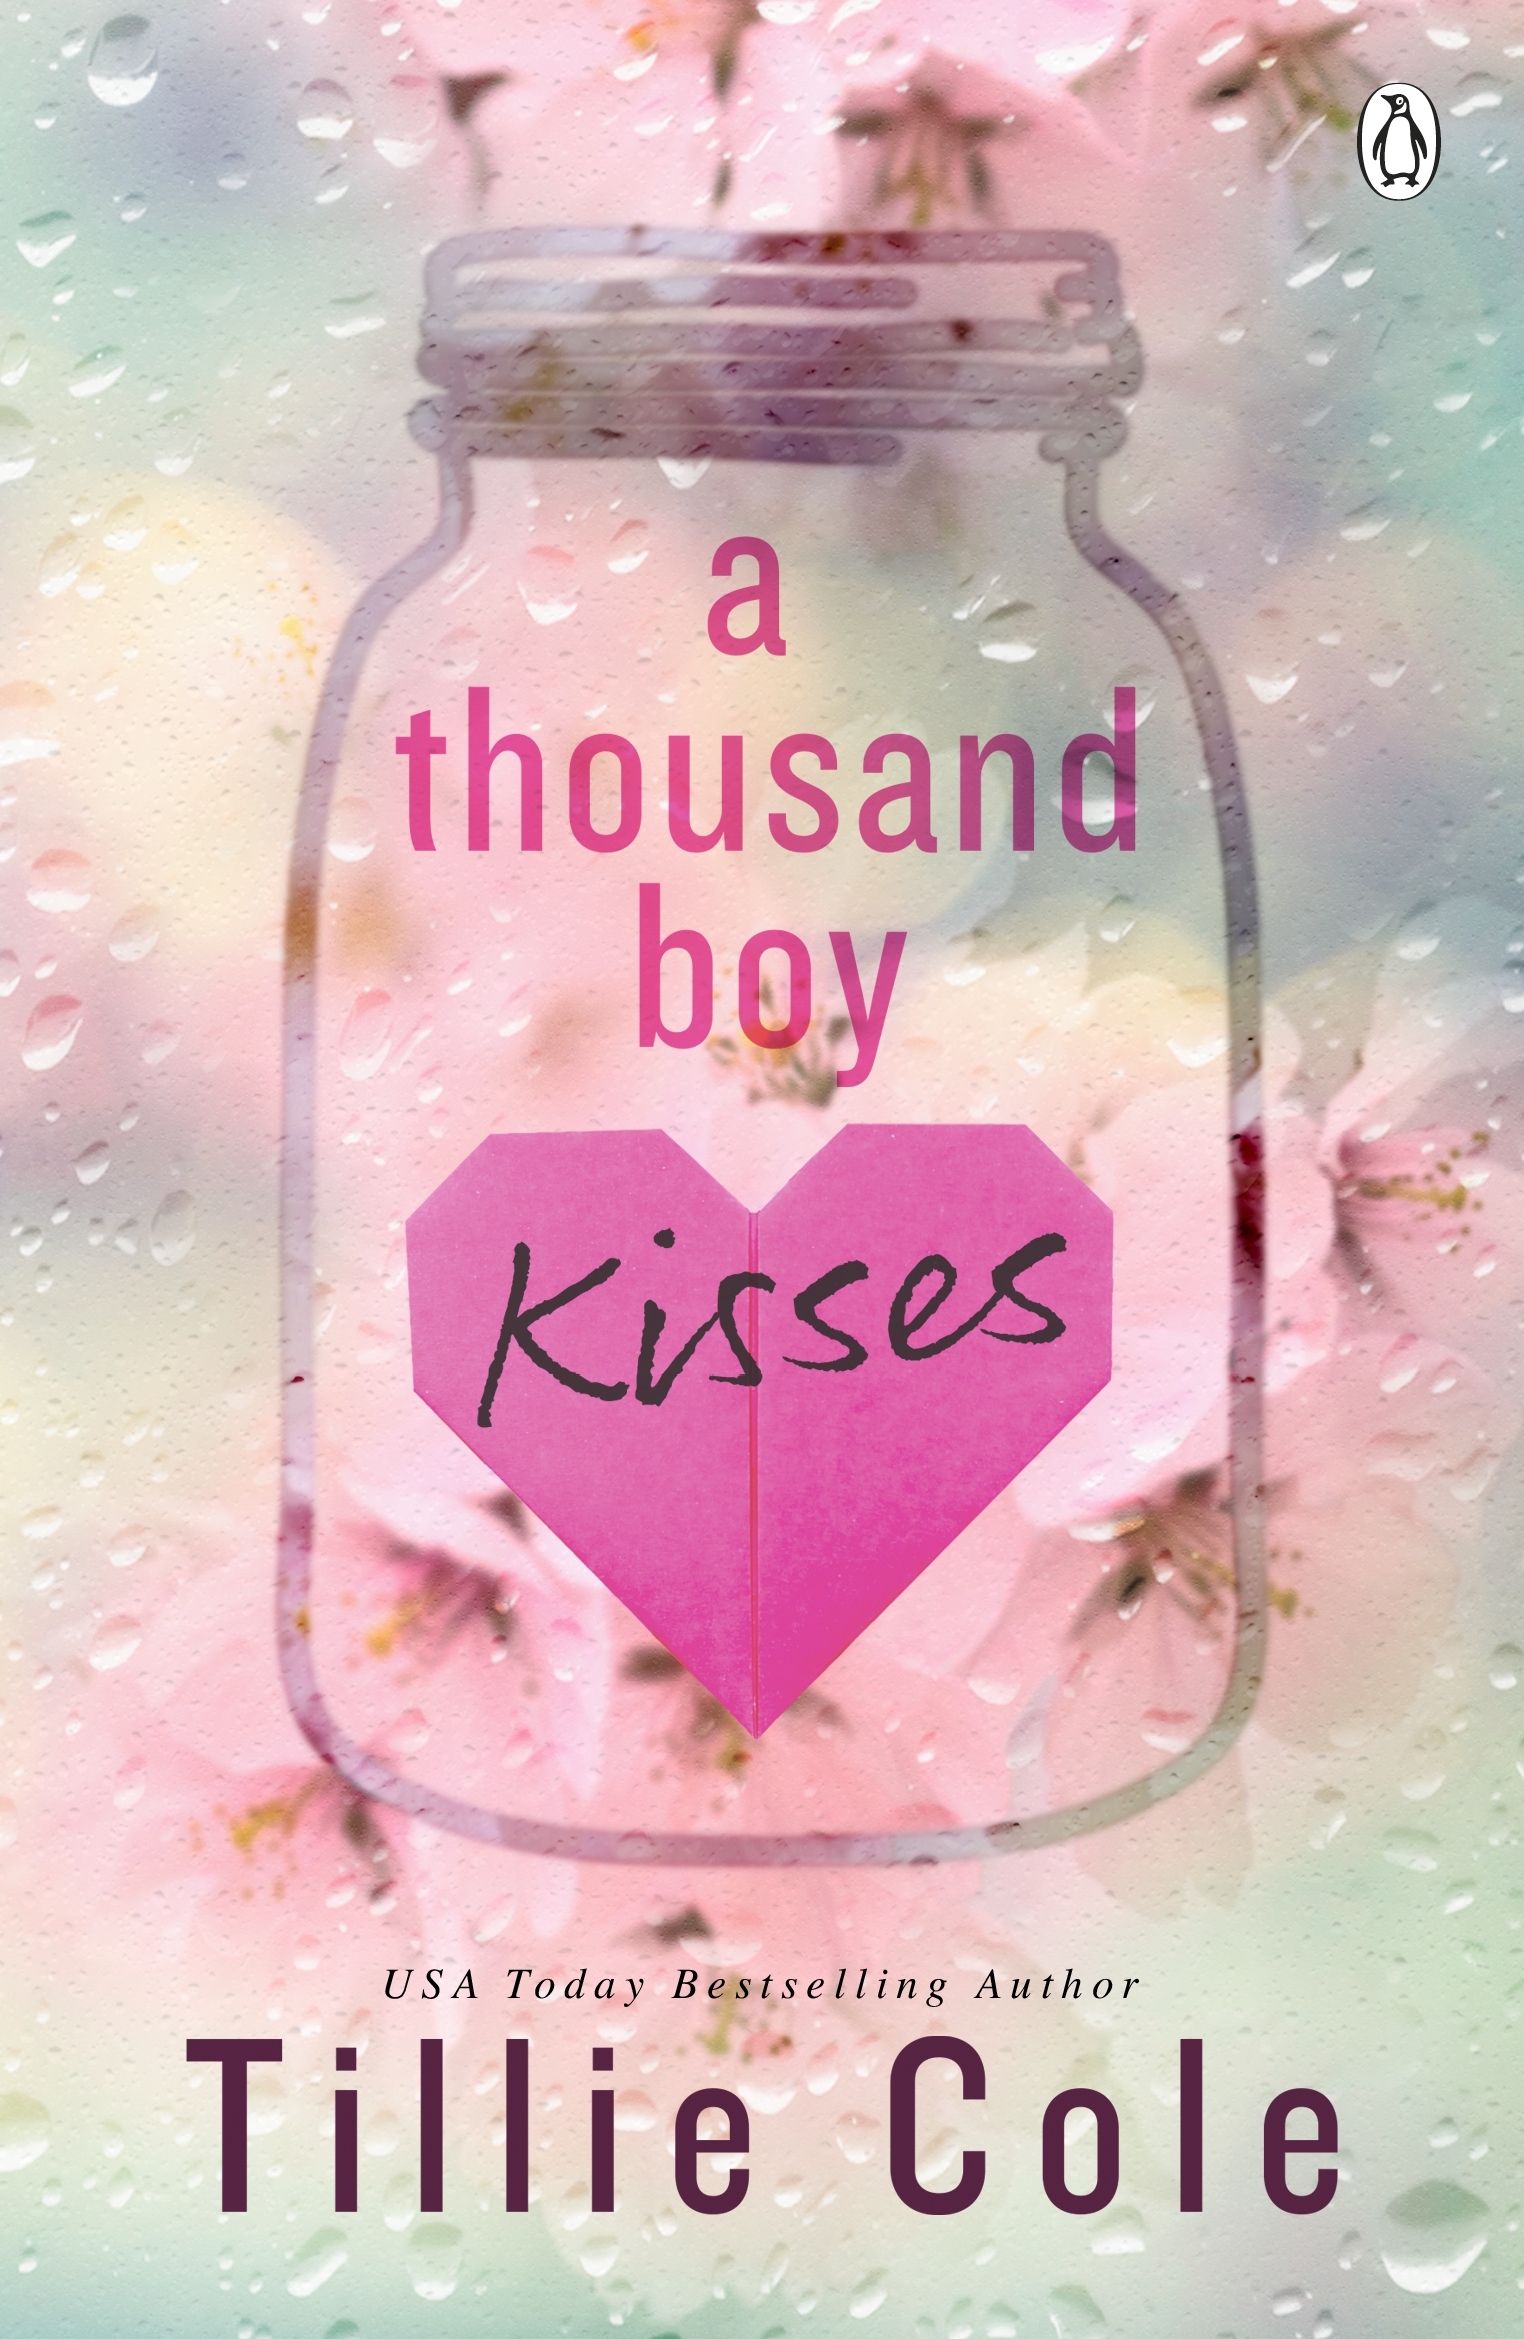 Extract  A Thousand Boy Kisses by Tillie Cole - Penguin Books Australia